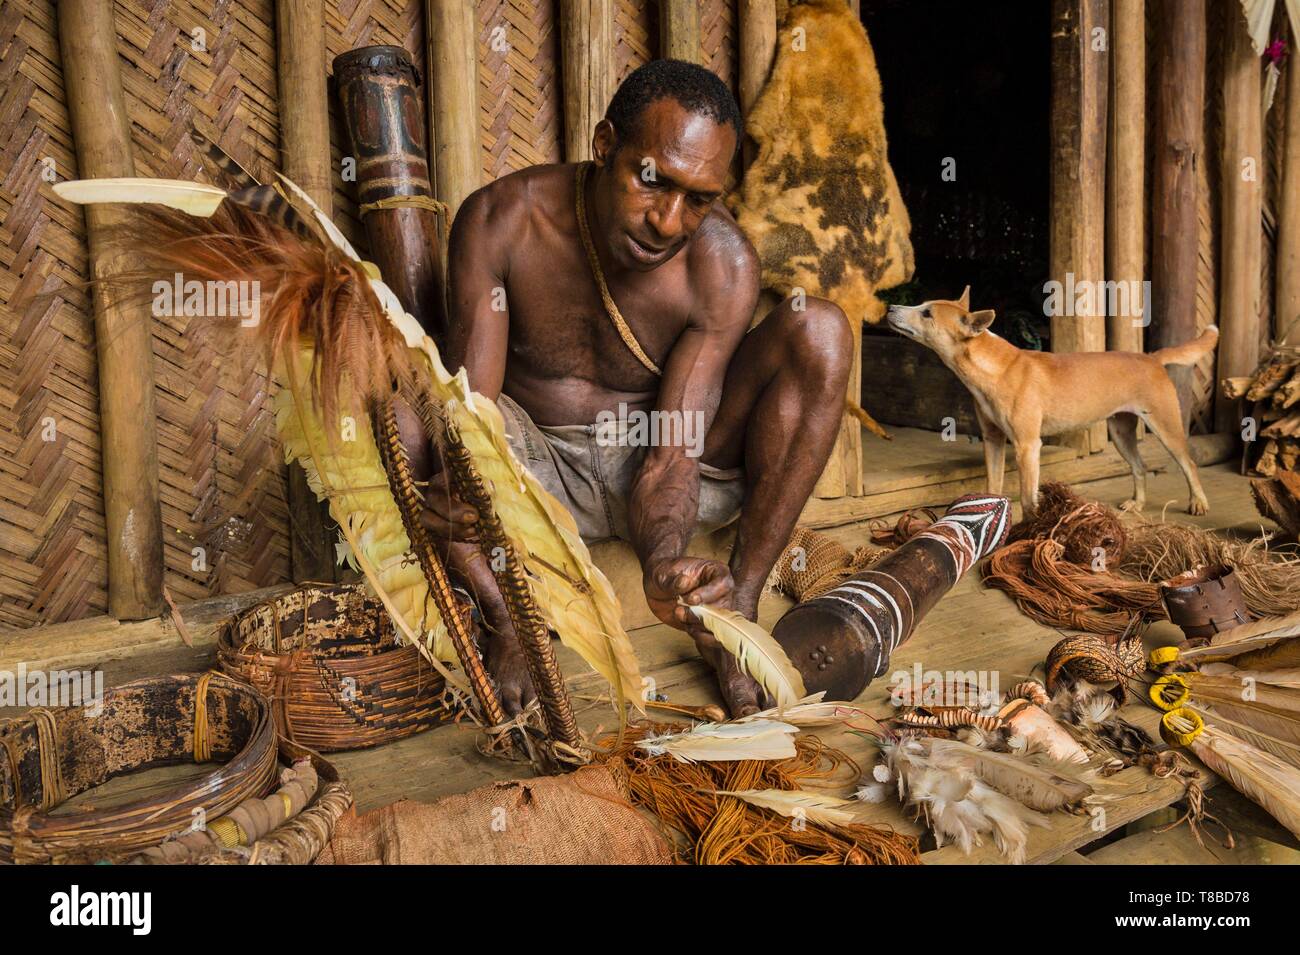 Papua Nuova Guinea, Southern Highlands provincia, area Bosavi, Kaluli tribù, Sugu village, ballerino preparare il suo corpo decorazione Foto Stock